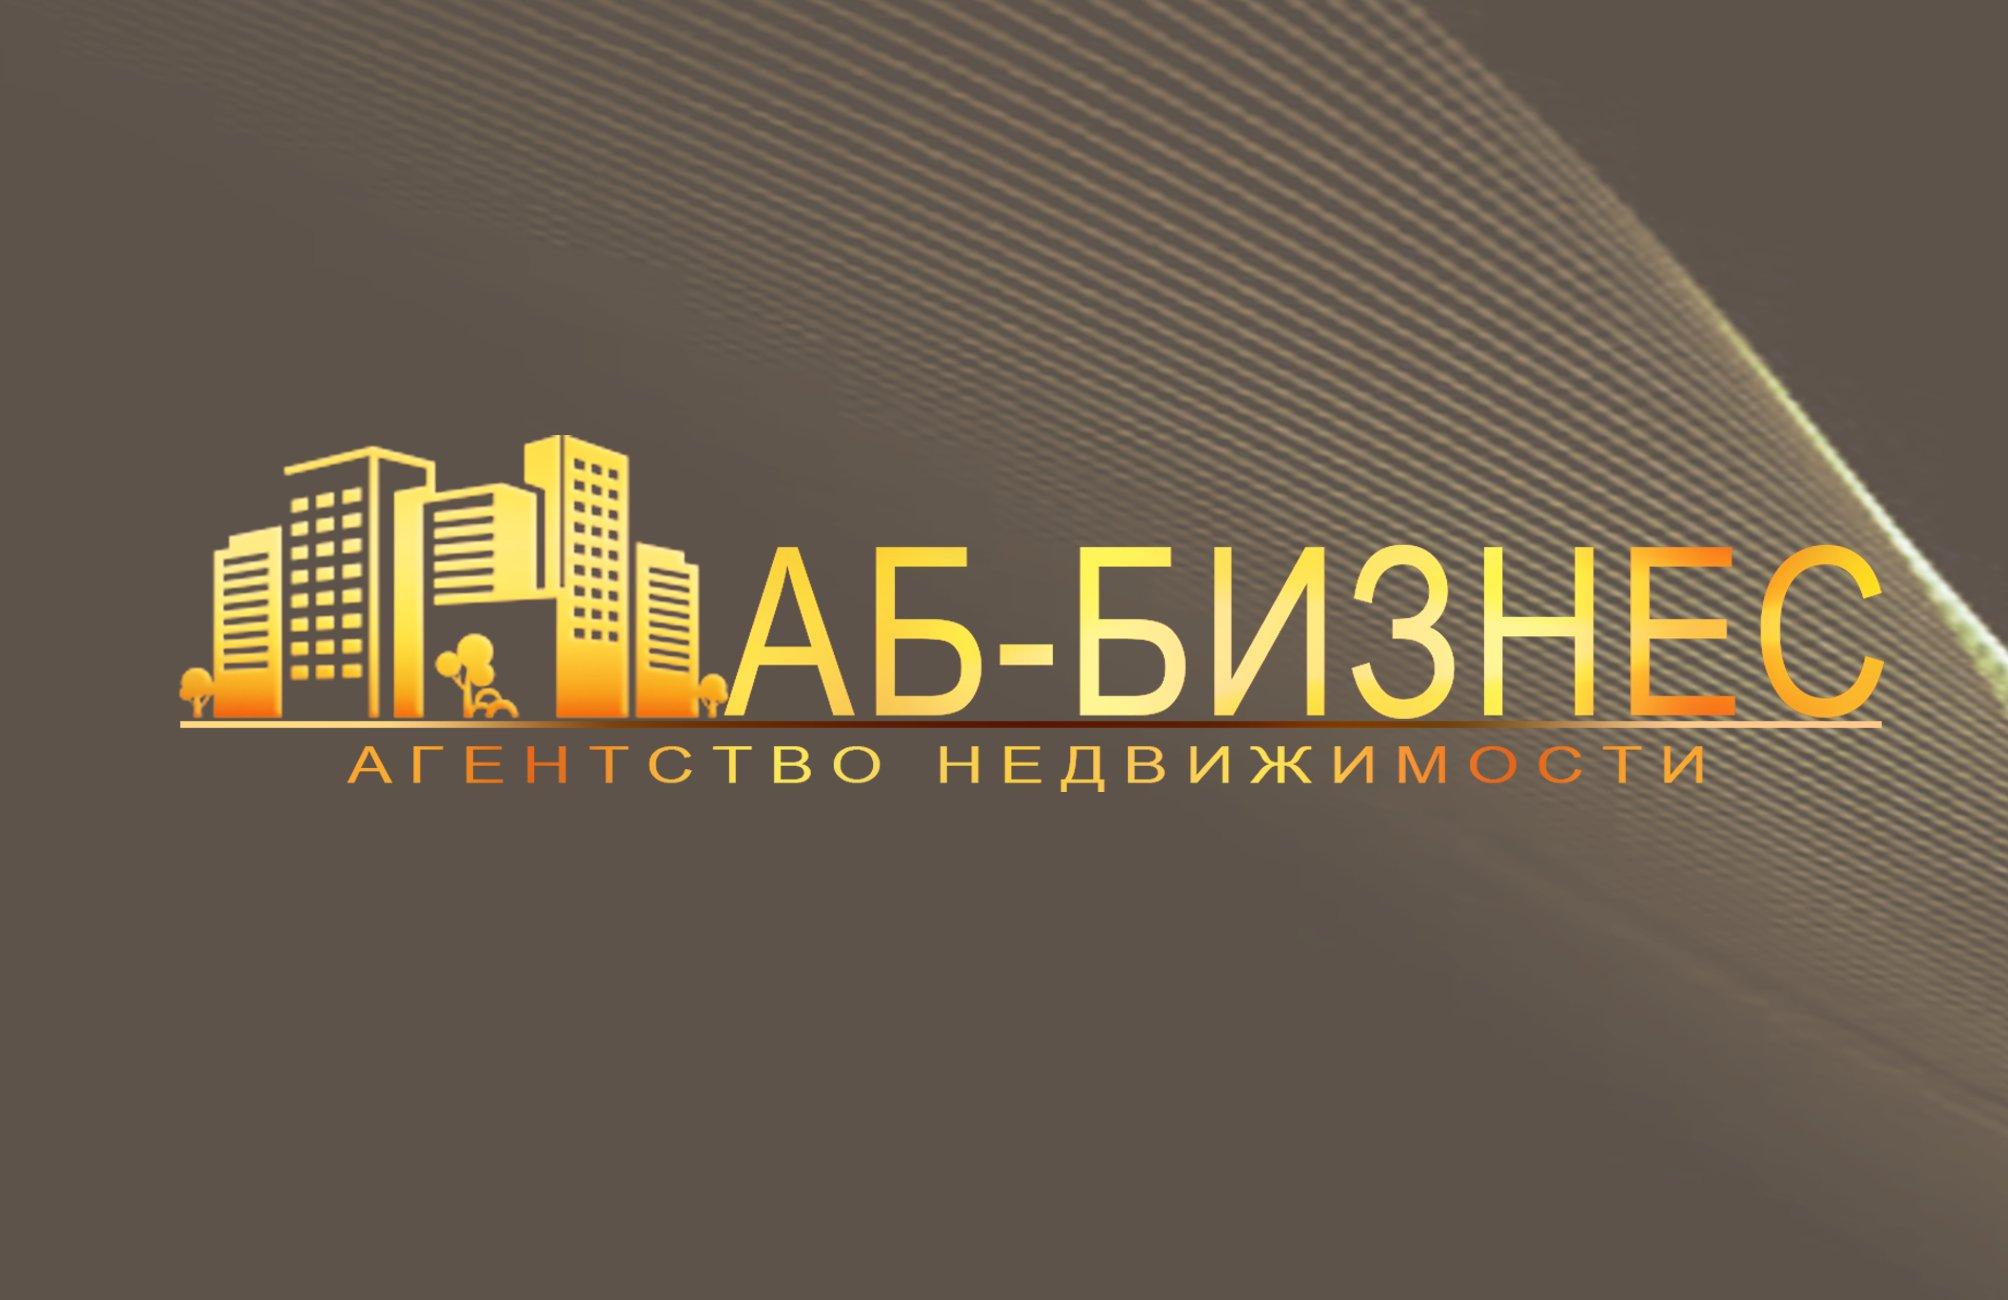 Новосибирск сайты агентств недвижимости